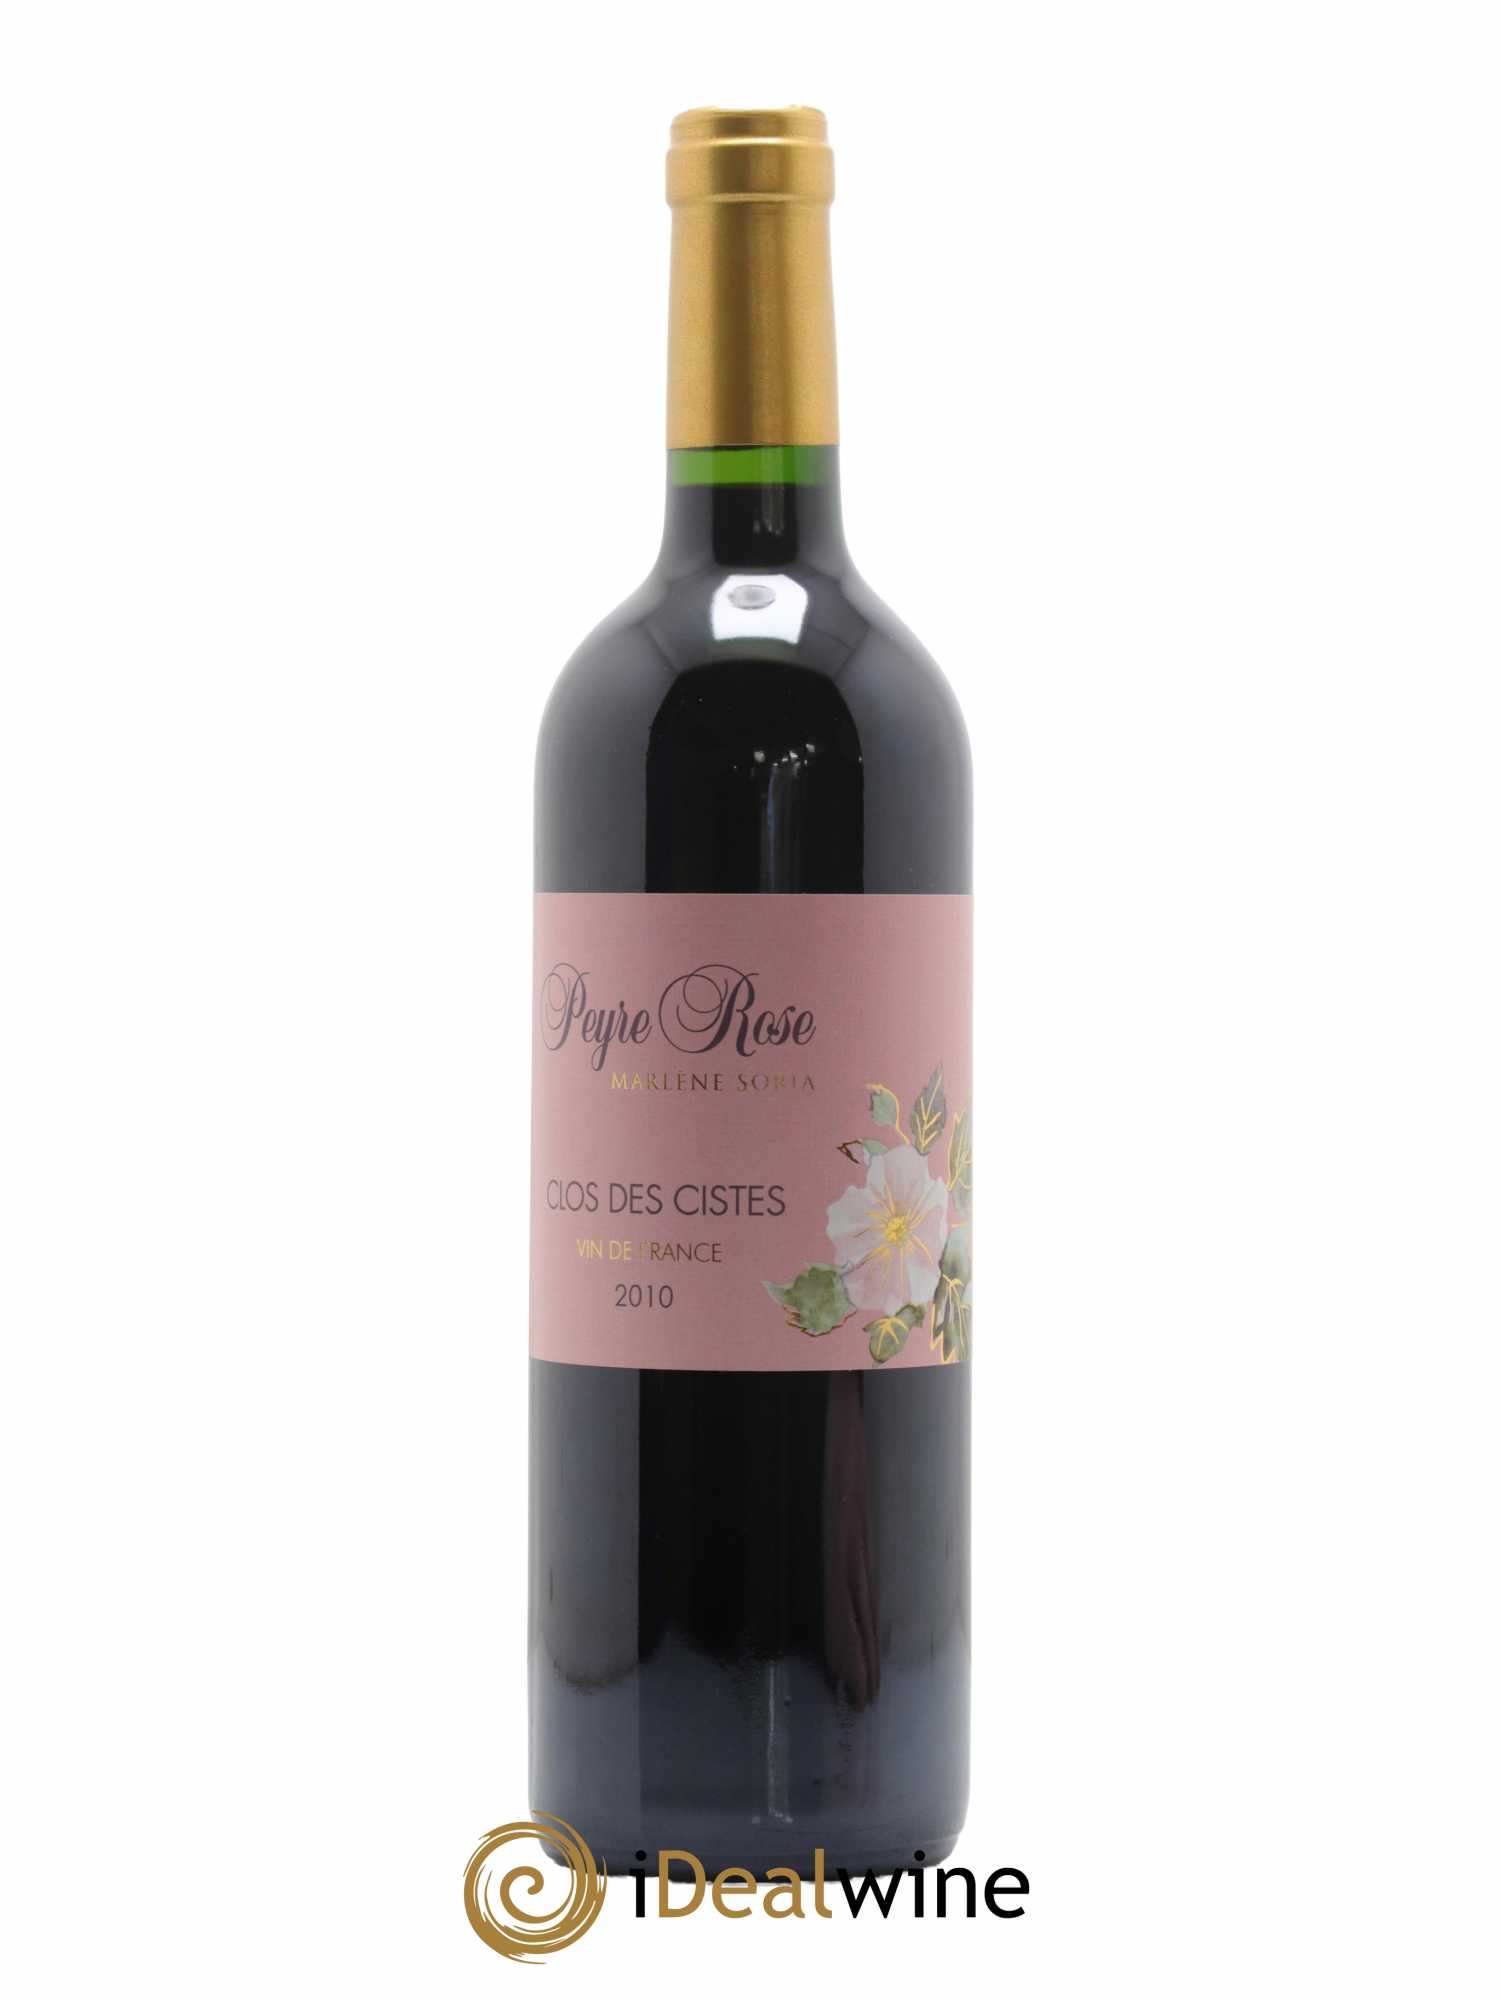 Vin de France (anciennement Coteaux du Languedoc) - Peyre Rose  Les Cistes